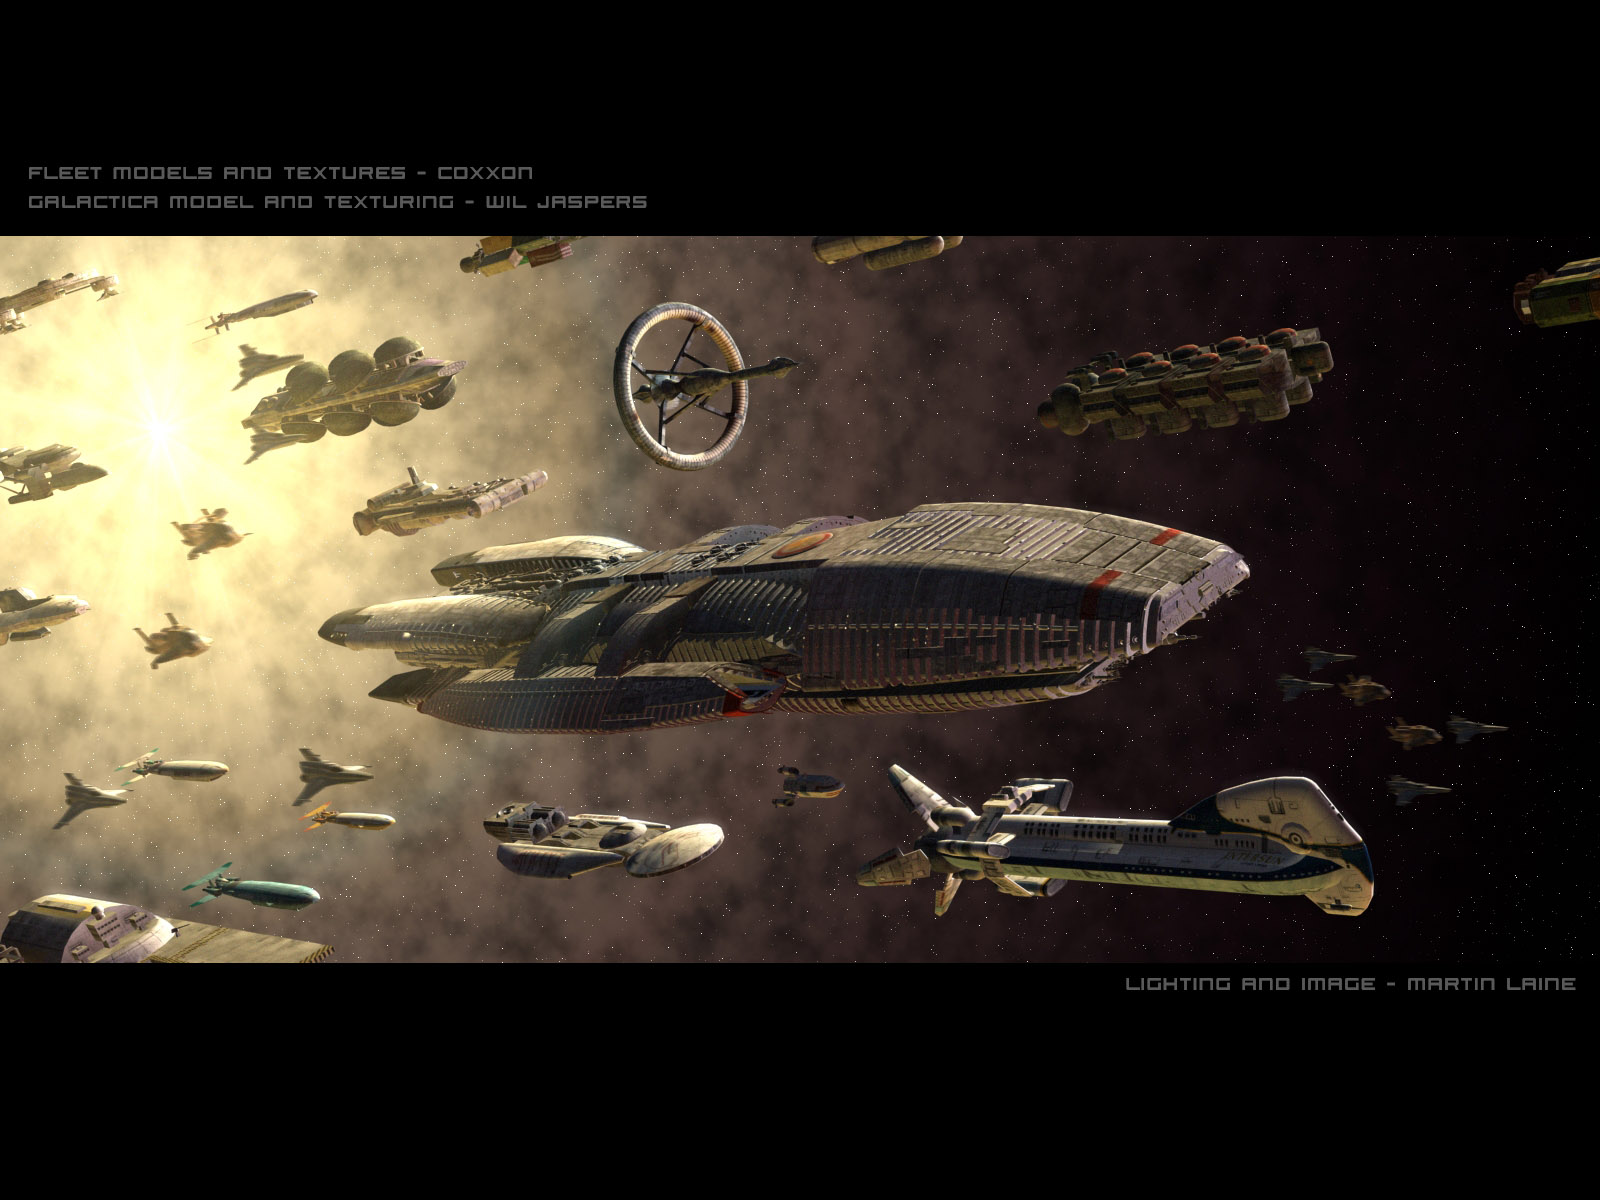 Battlestar Galactica Wallpaper X